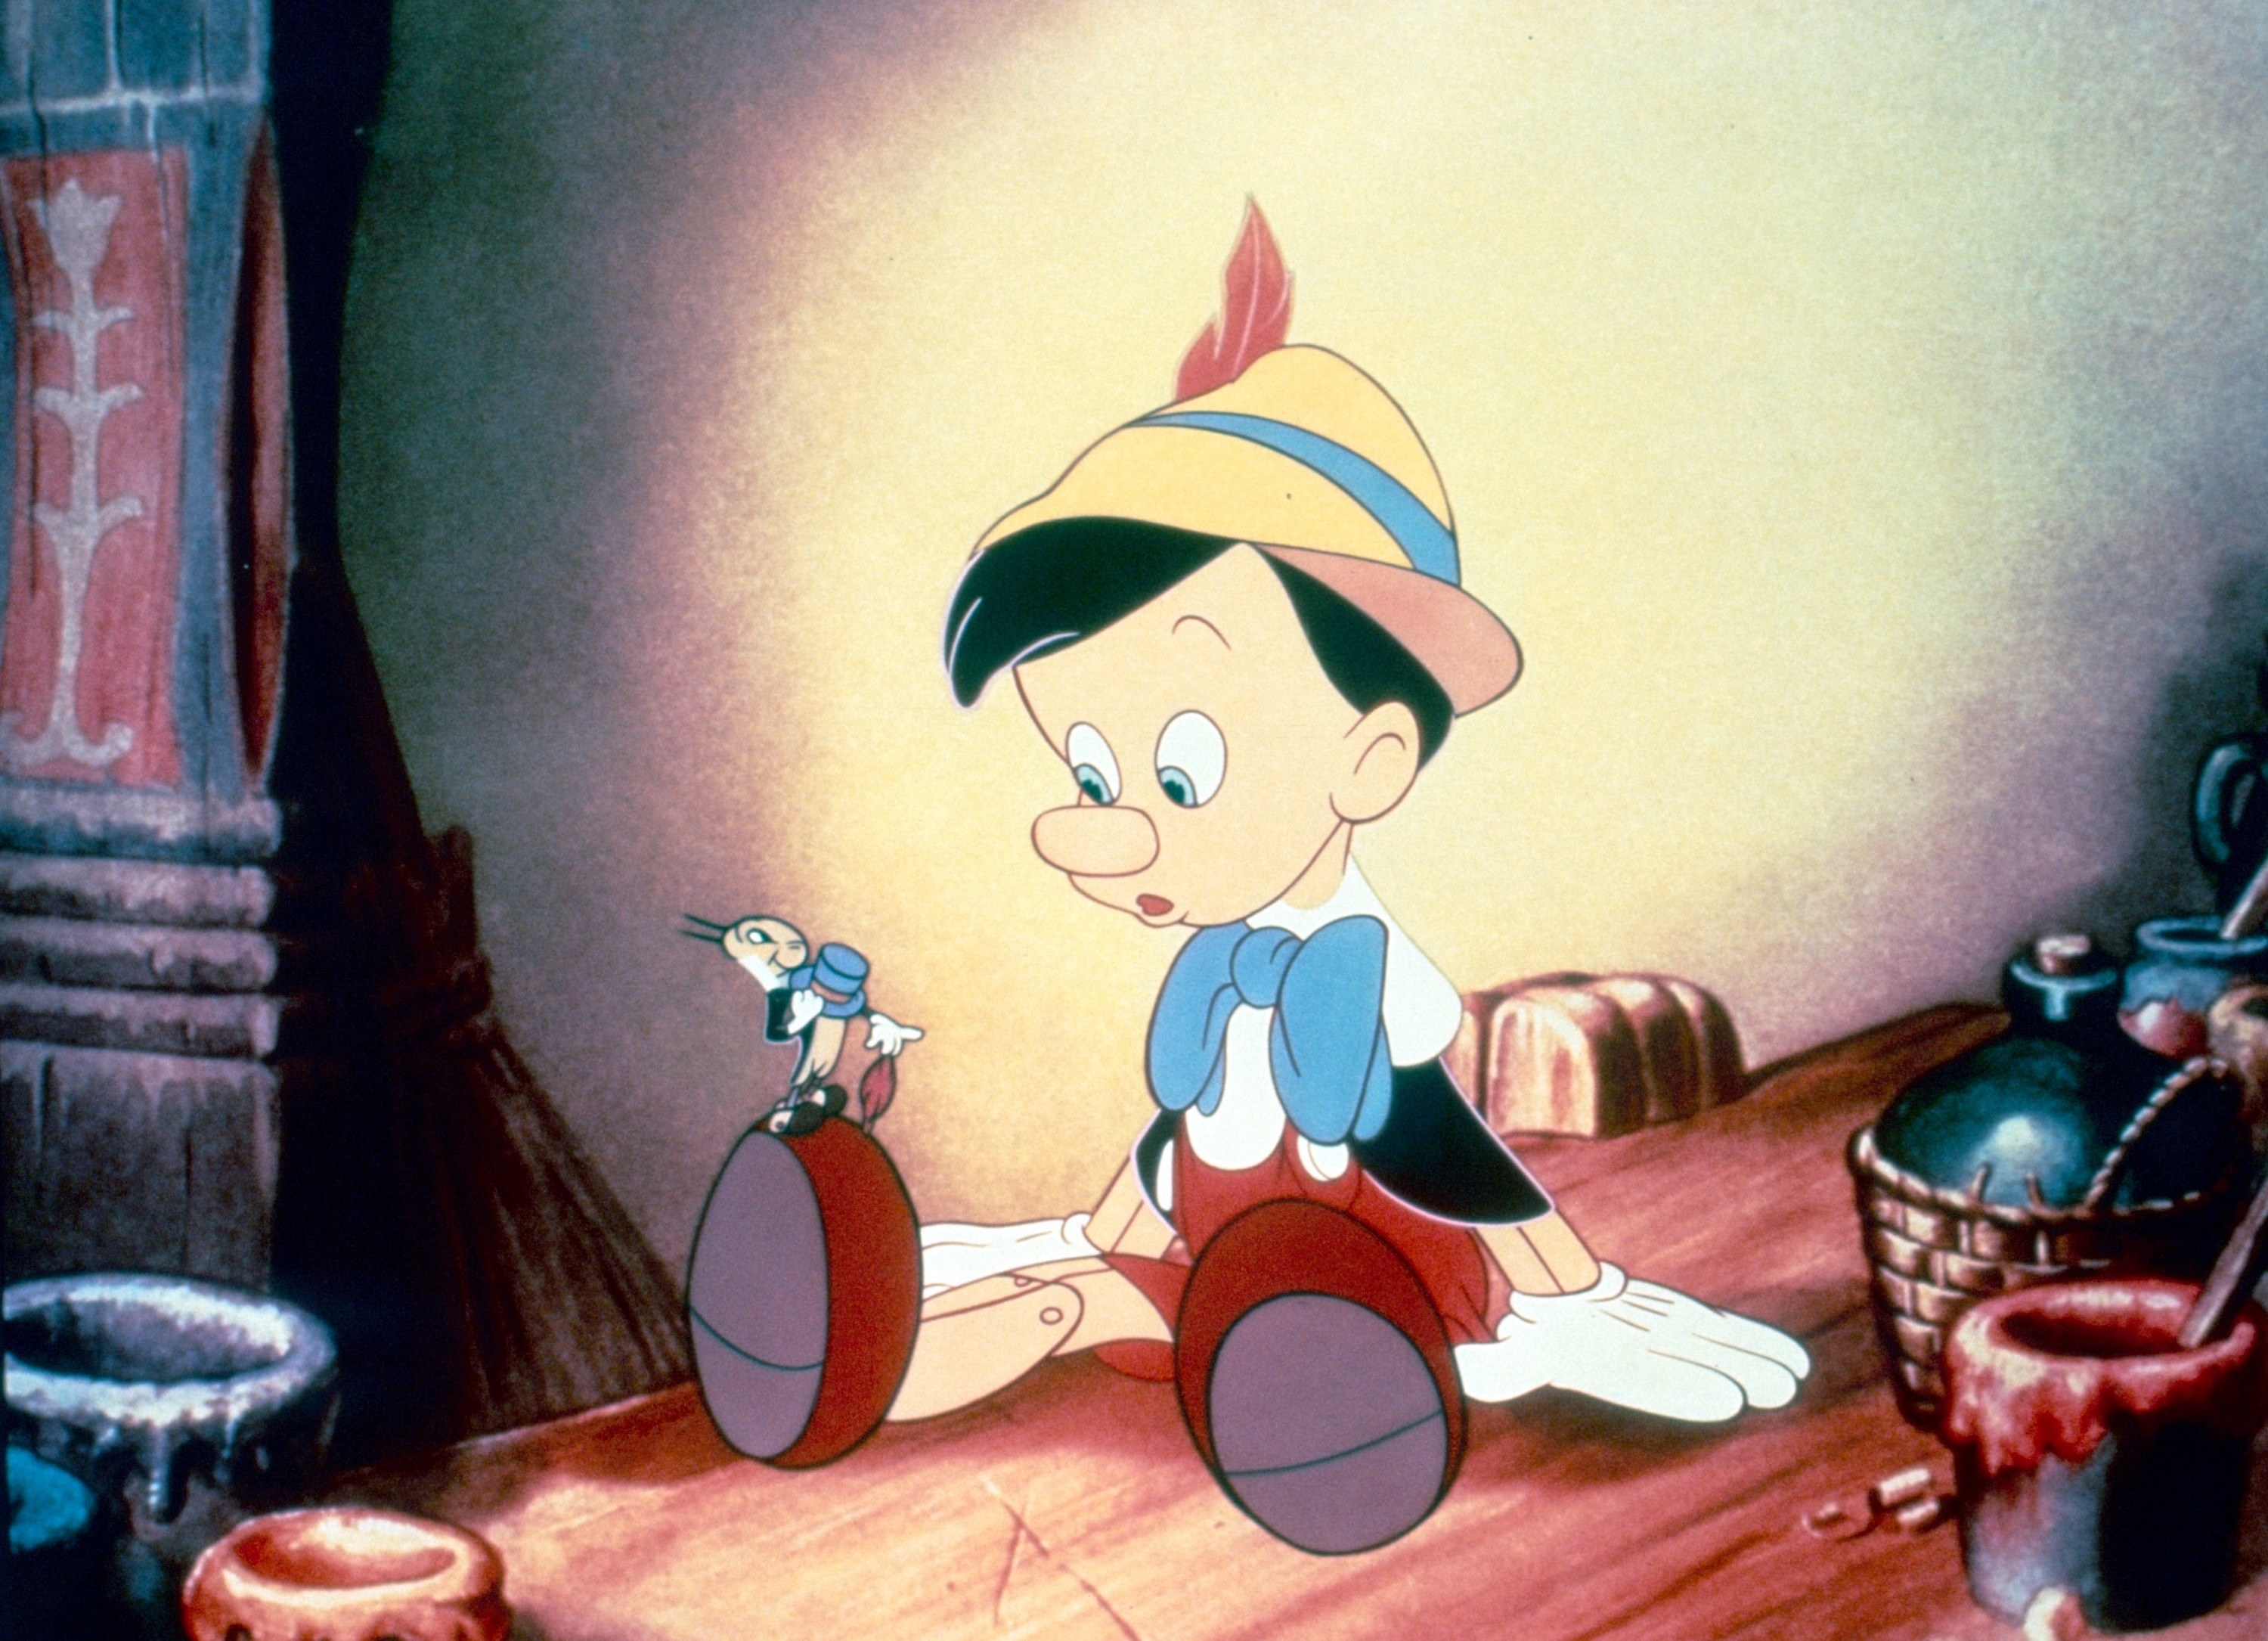 Pinocchio with Jiminy Cricket